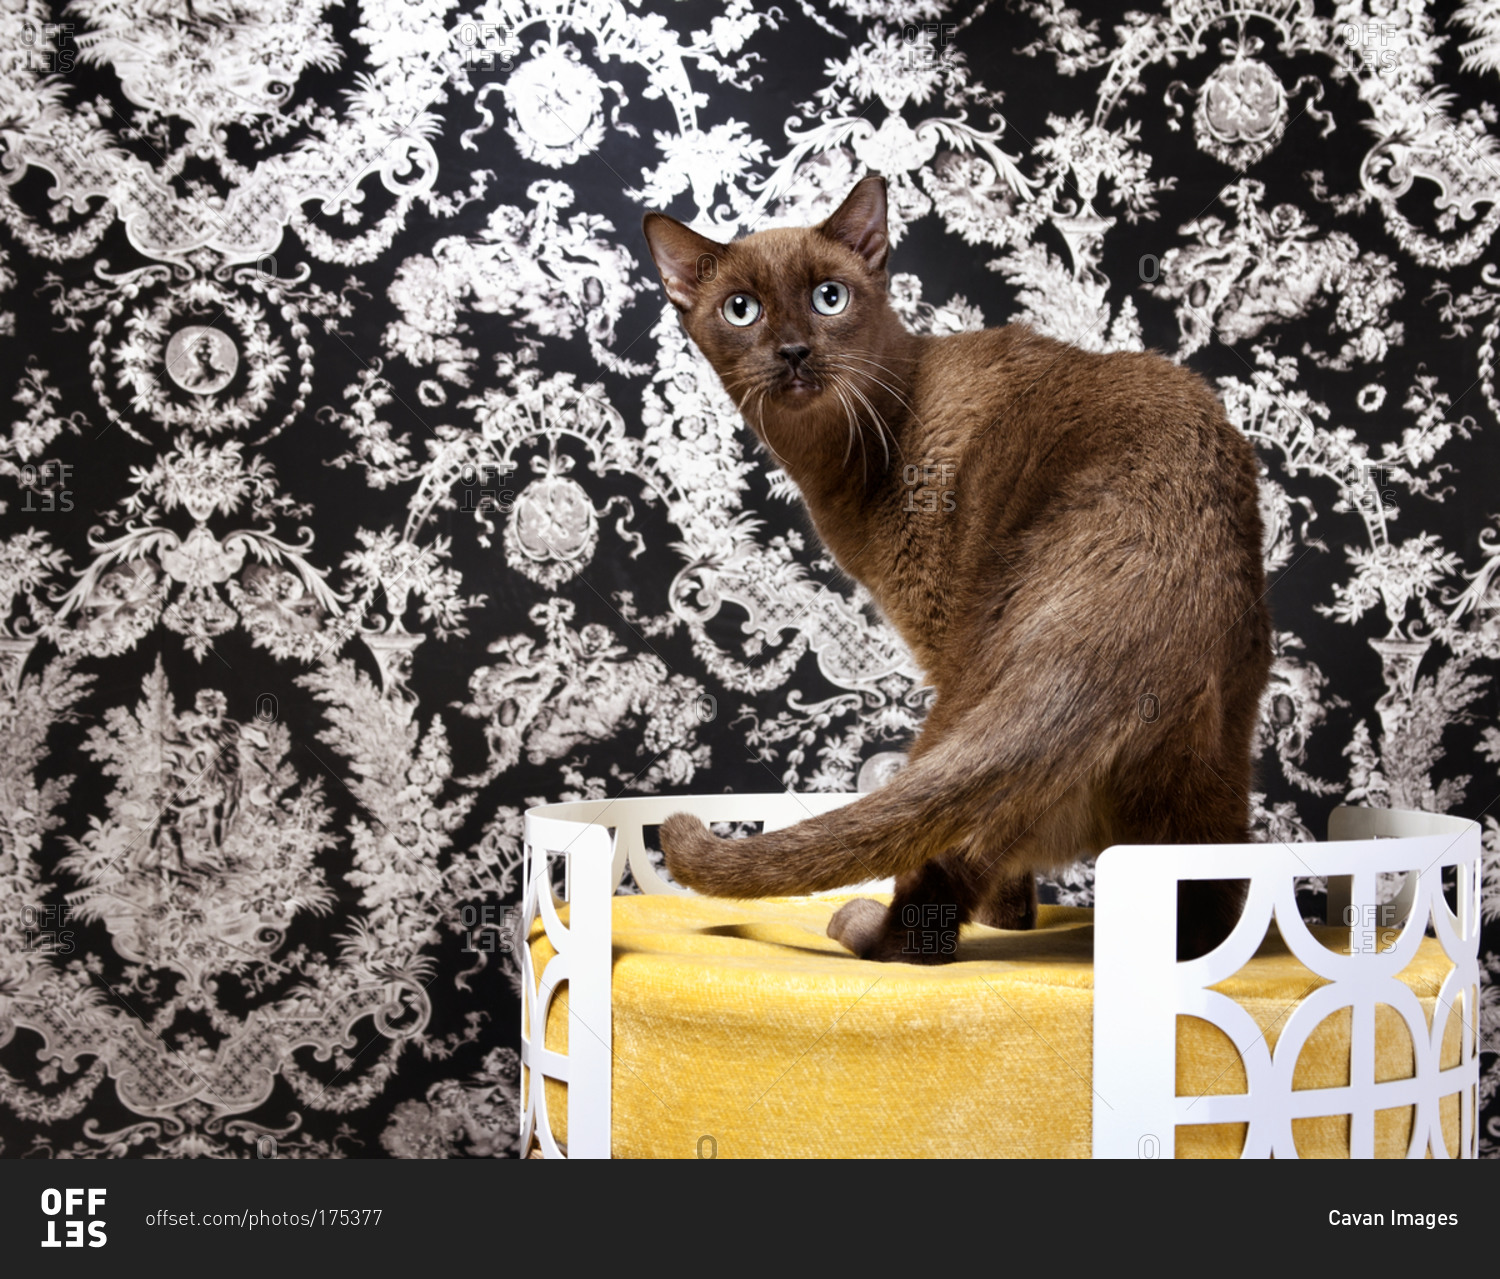 A Burmese cat in a cat bed